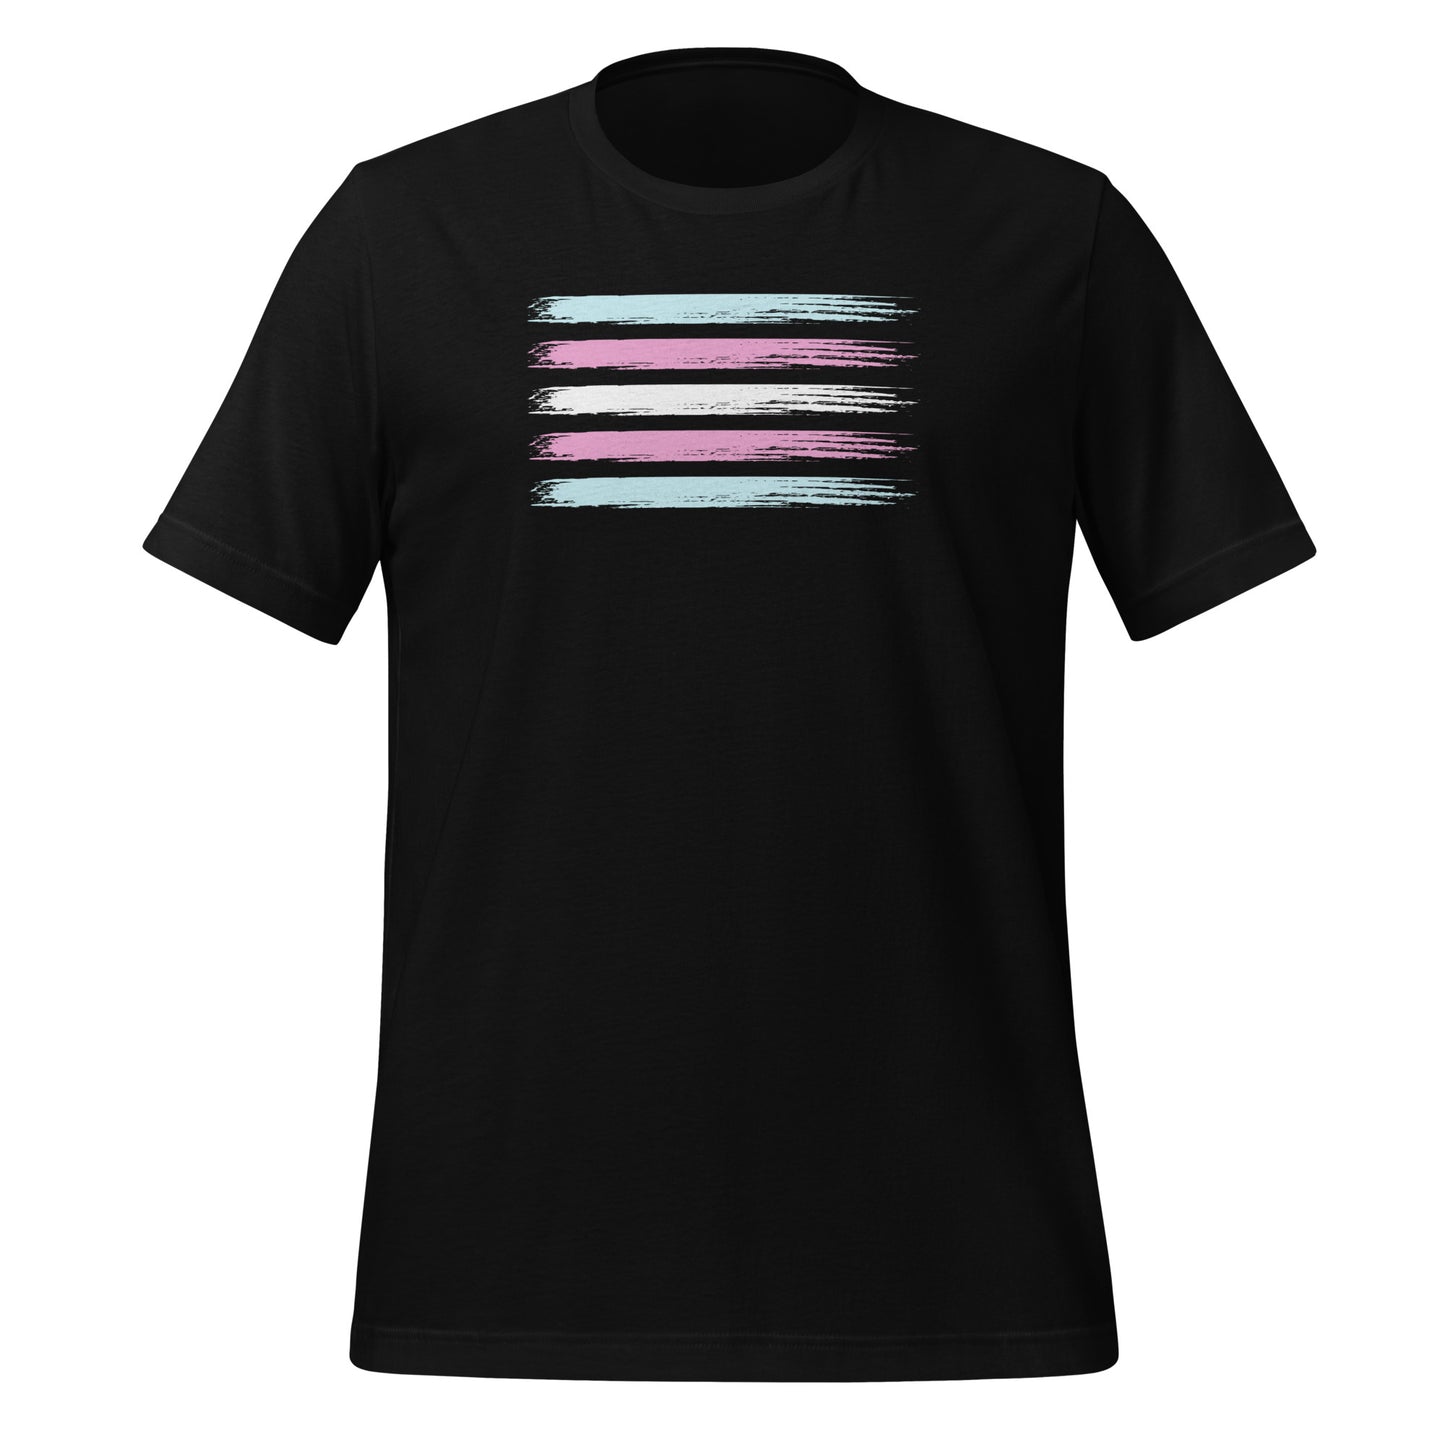 Transgender Pride Flag unisex t-shirt